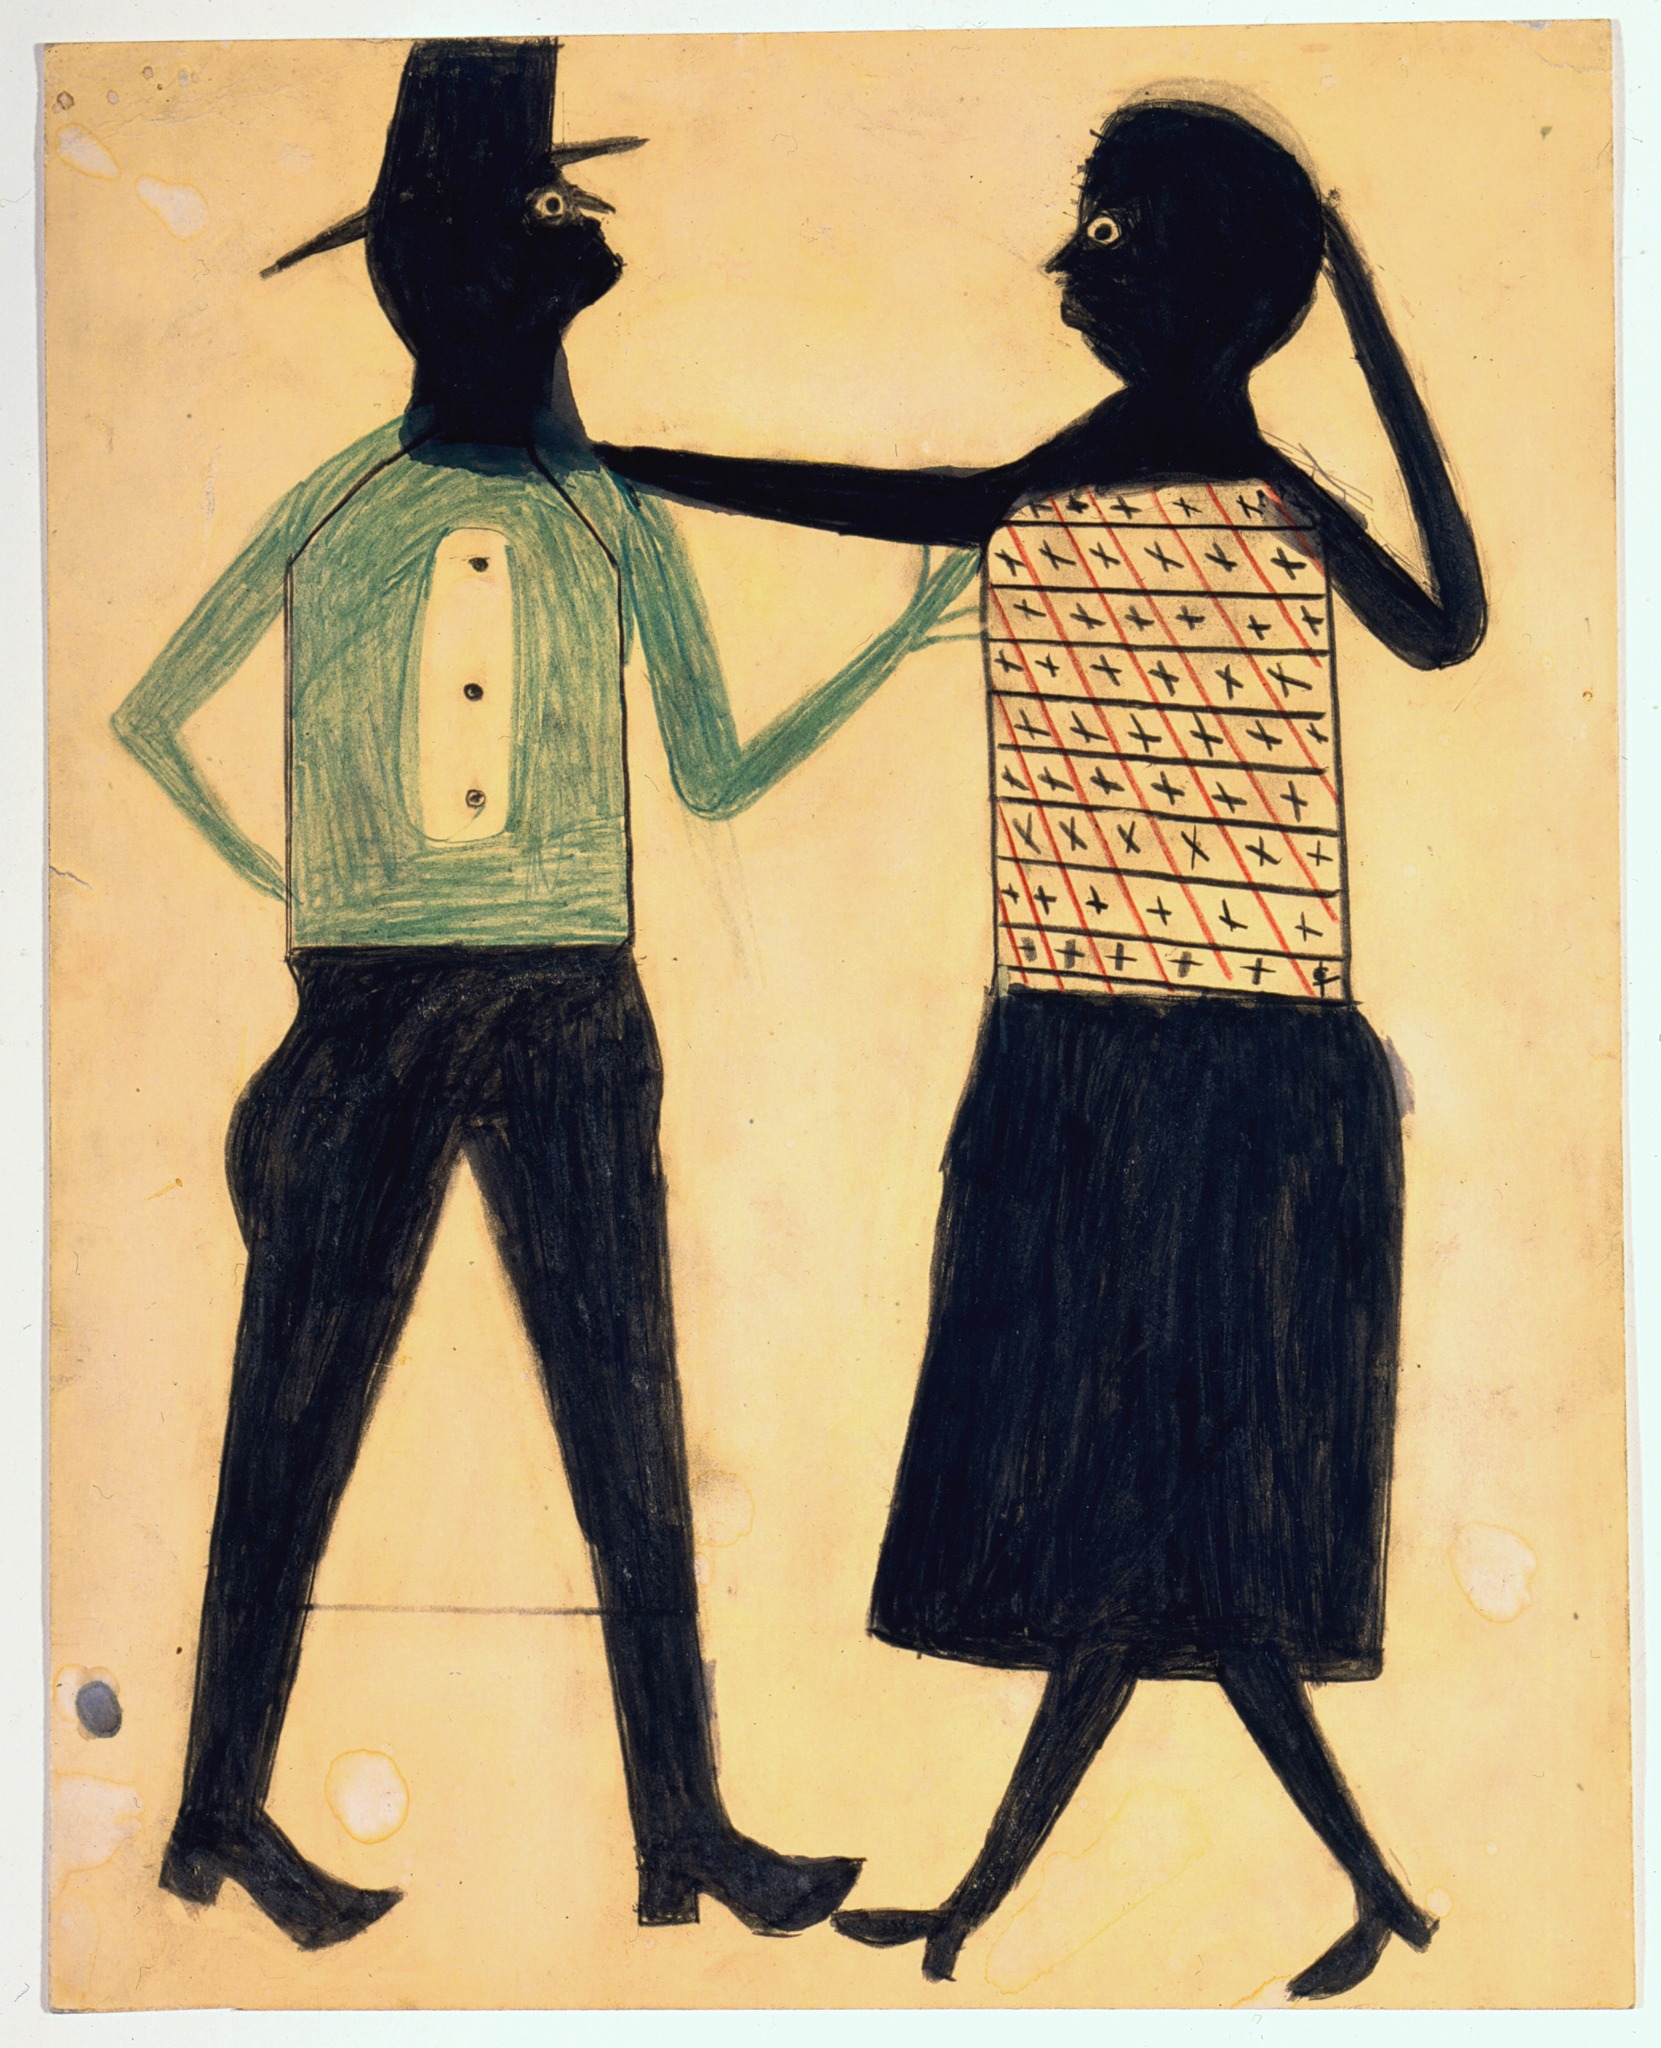 Utan titel (man och kvinna) by Bill Traylor - ca. 1939-1942 